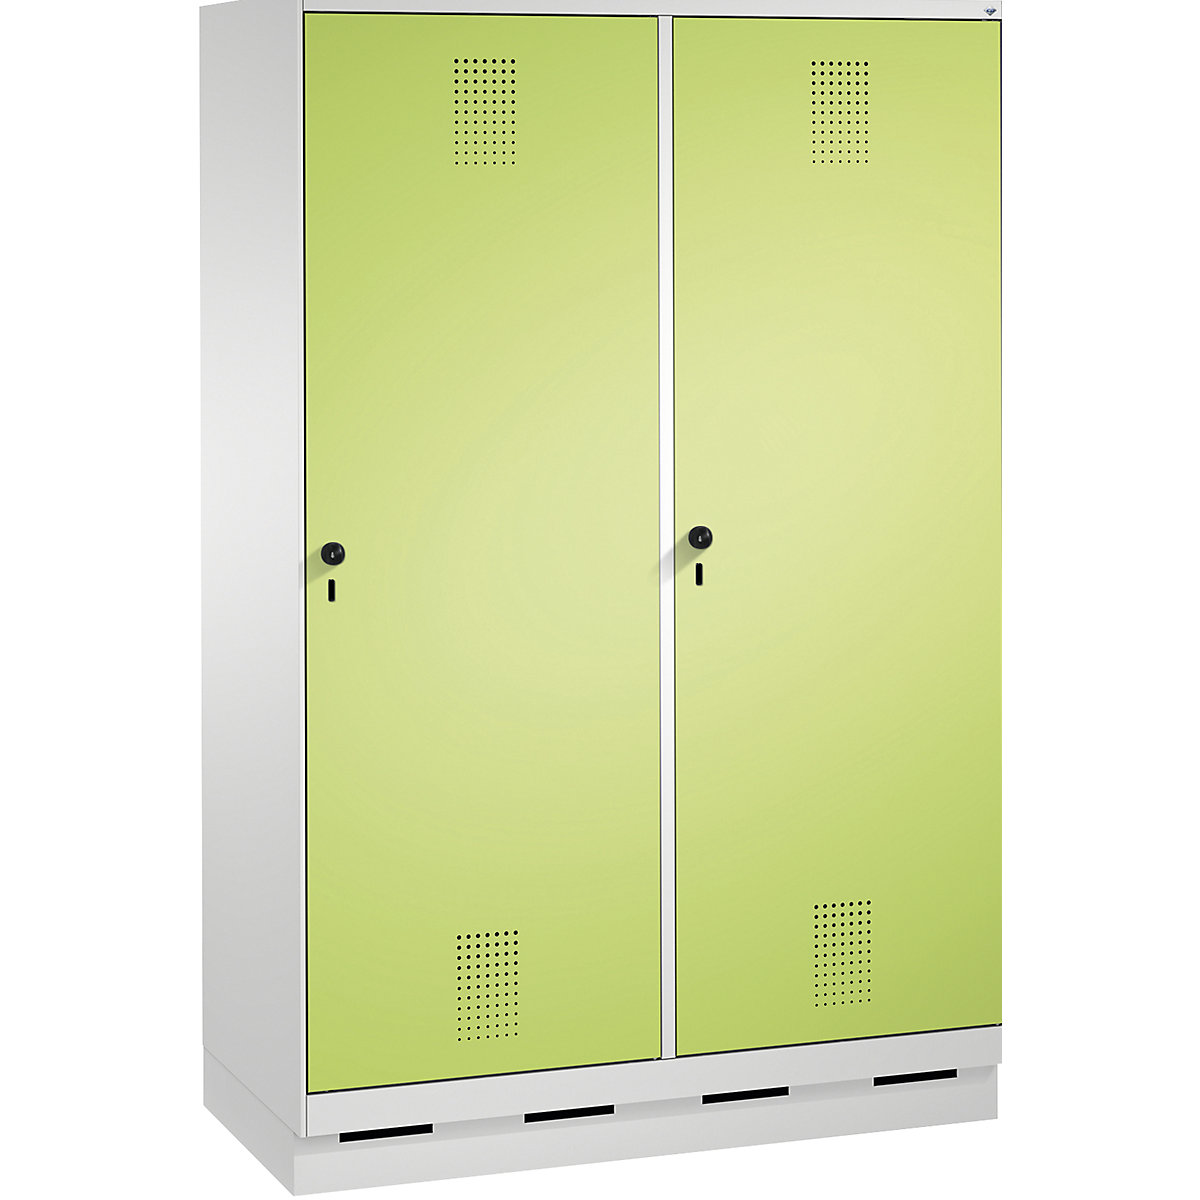 EVOLO Garderobenschrank, Tür über 2 Abteile, mit Sockel C+P, 4 Abteile, 2 Türen, Abteilbreite 300 mm, lichtgrau / viridingrün-8